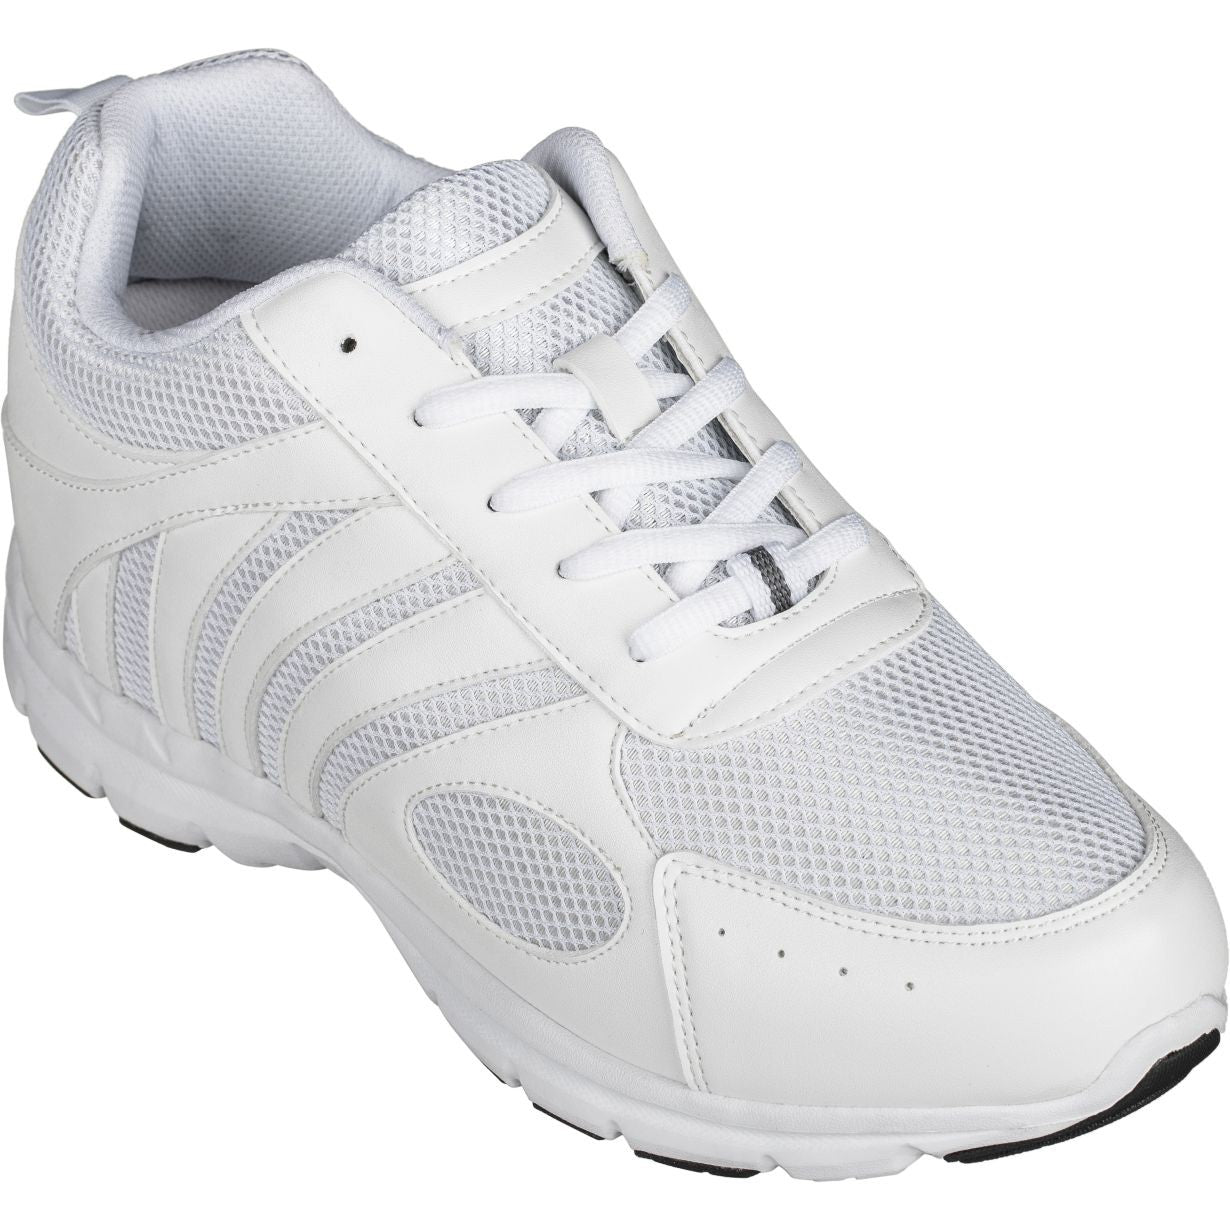 CALTO Lightweight Elevator Sneakers - TallMenShoes.com – Tallmenshoes.com